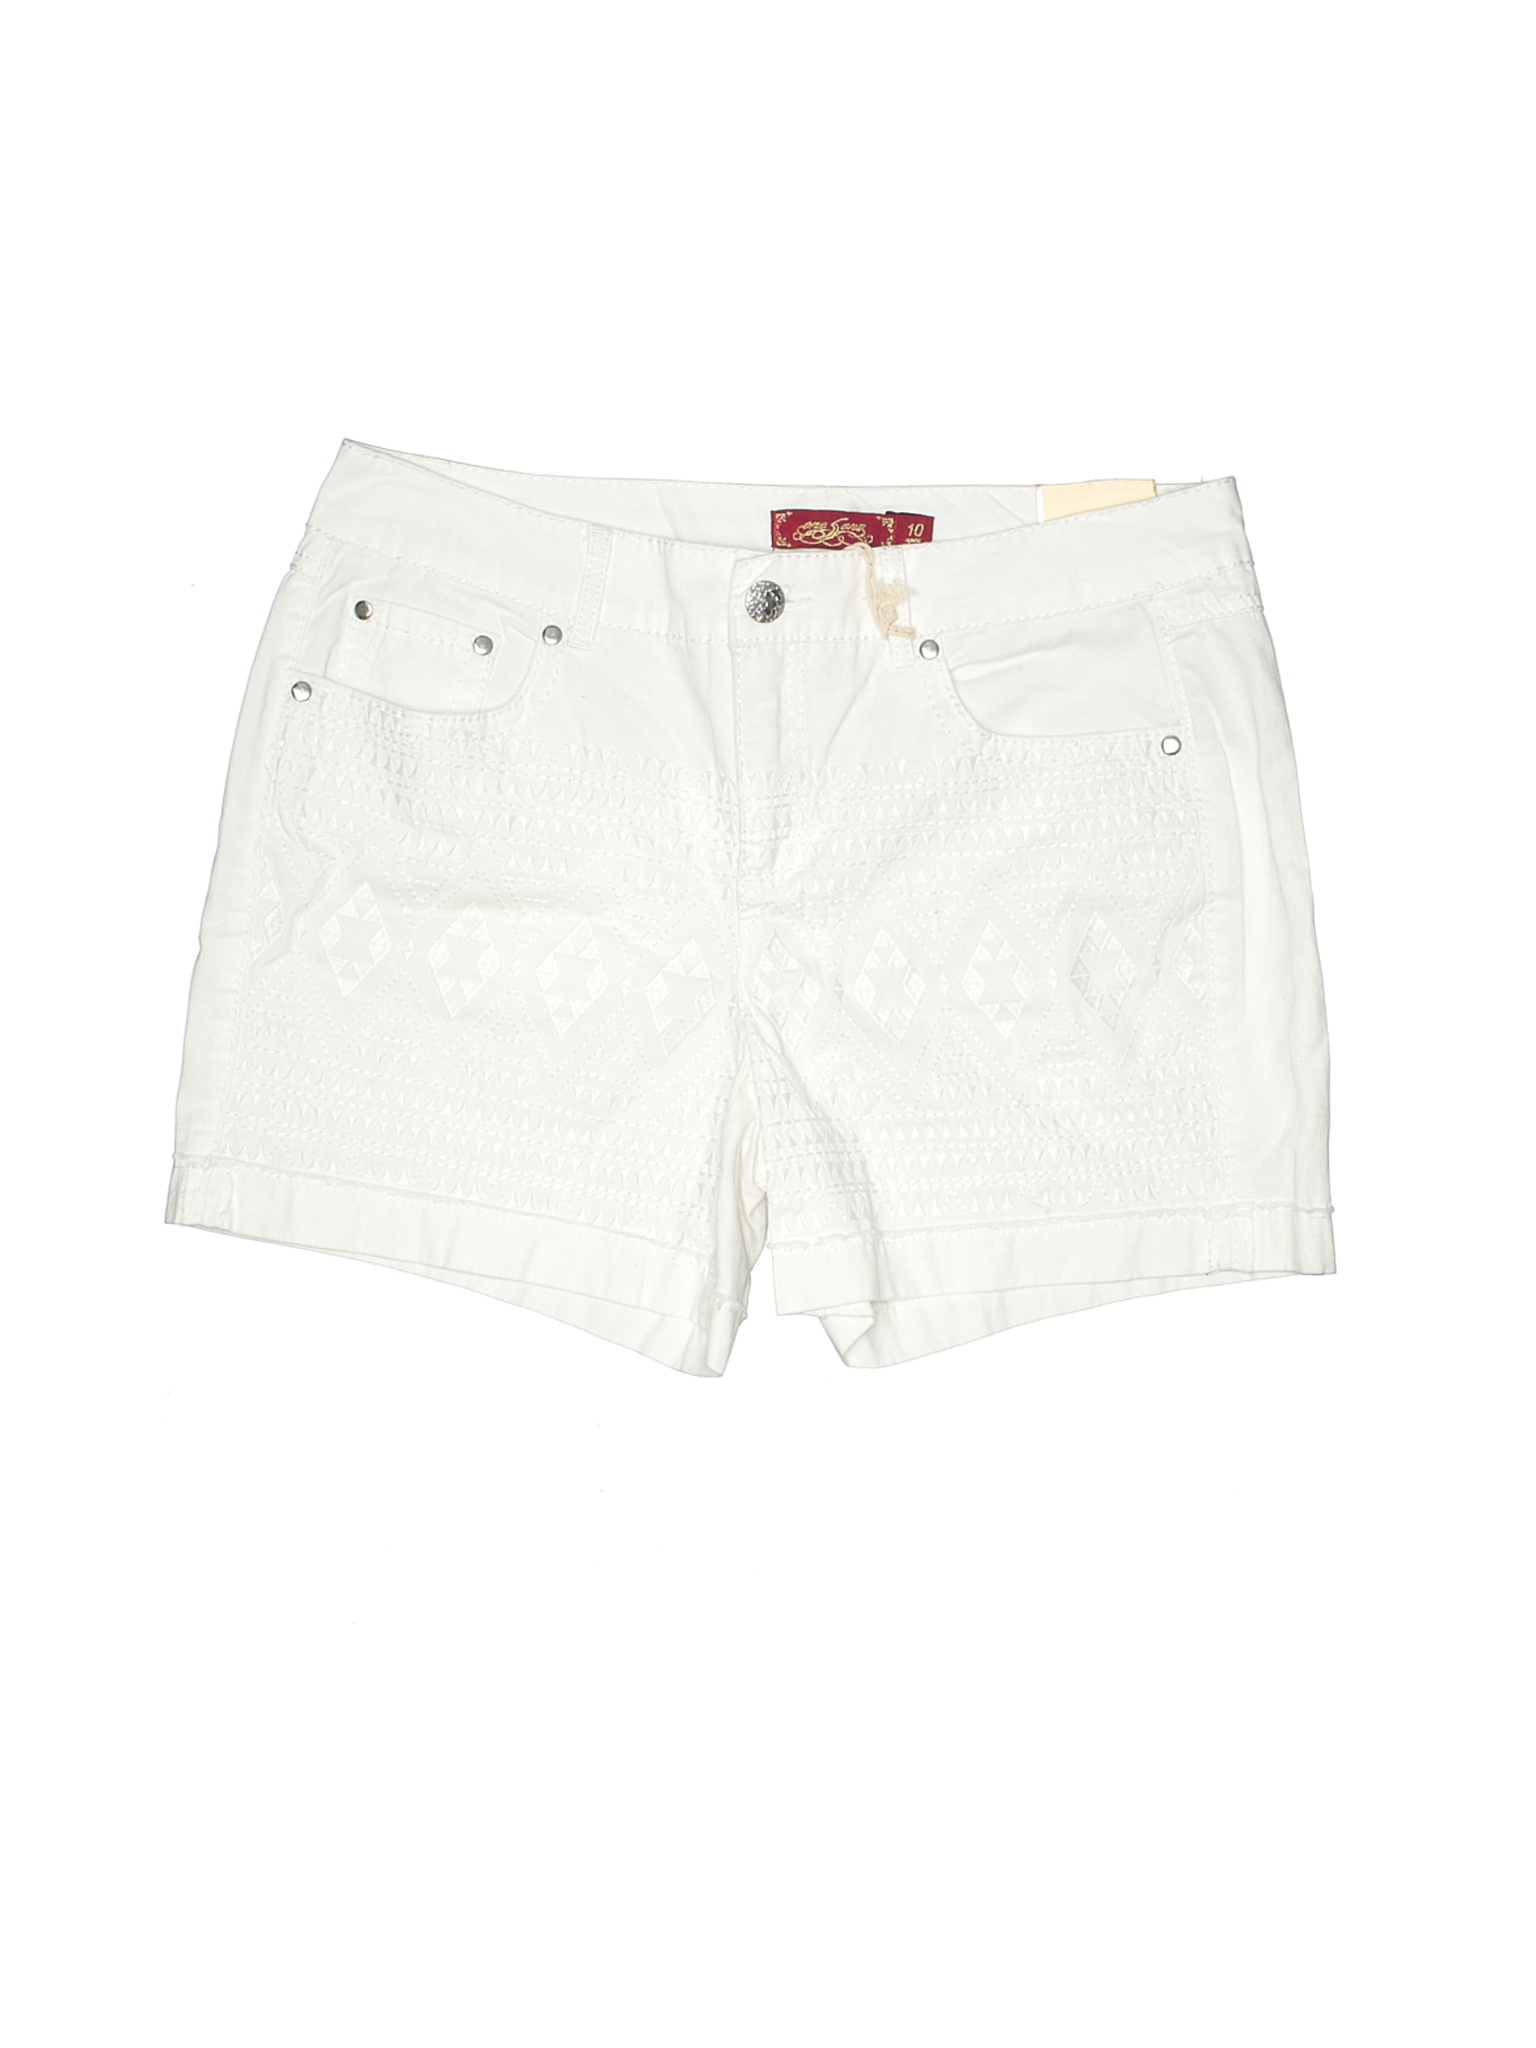 NWT One 5 One Women White Shorts 10 | eBay